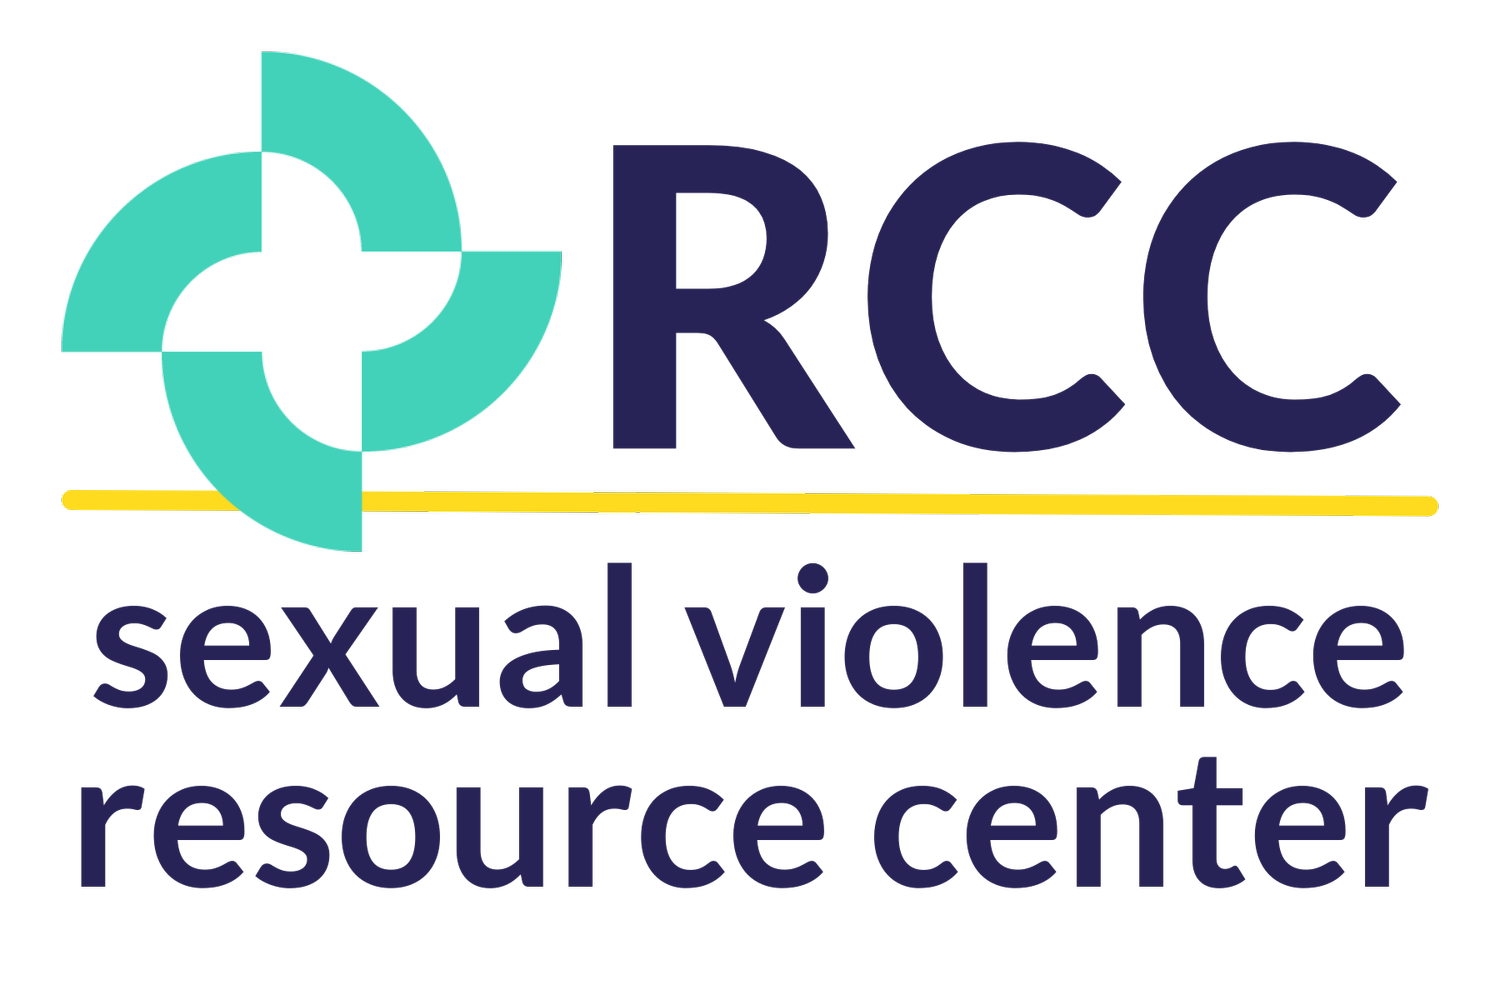 Lauren Altaweel — Rcc Sexual Violence Resource Center 